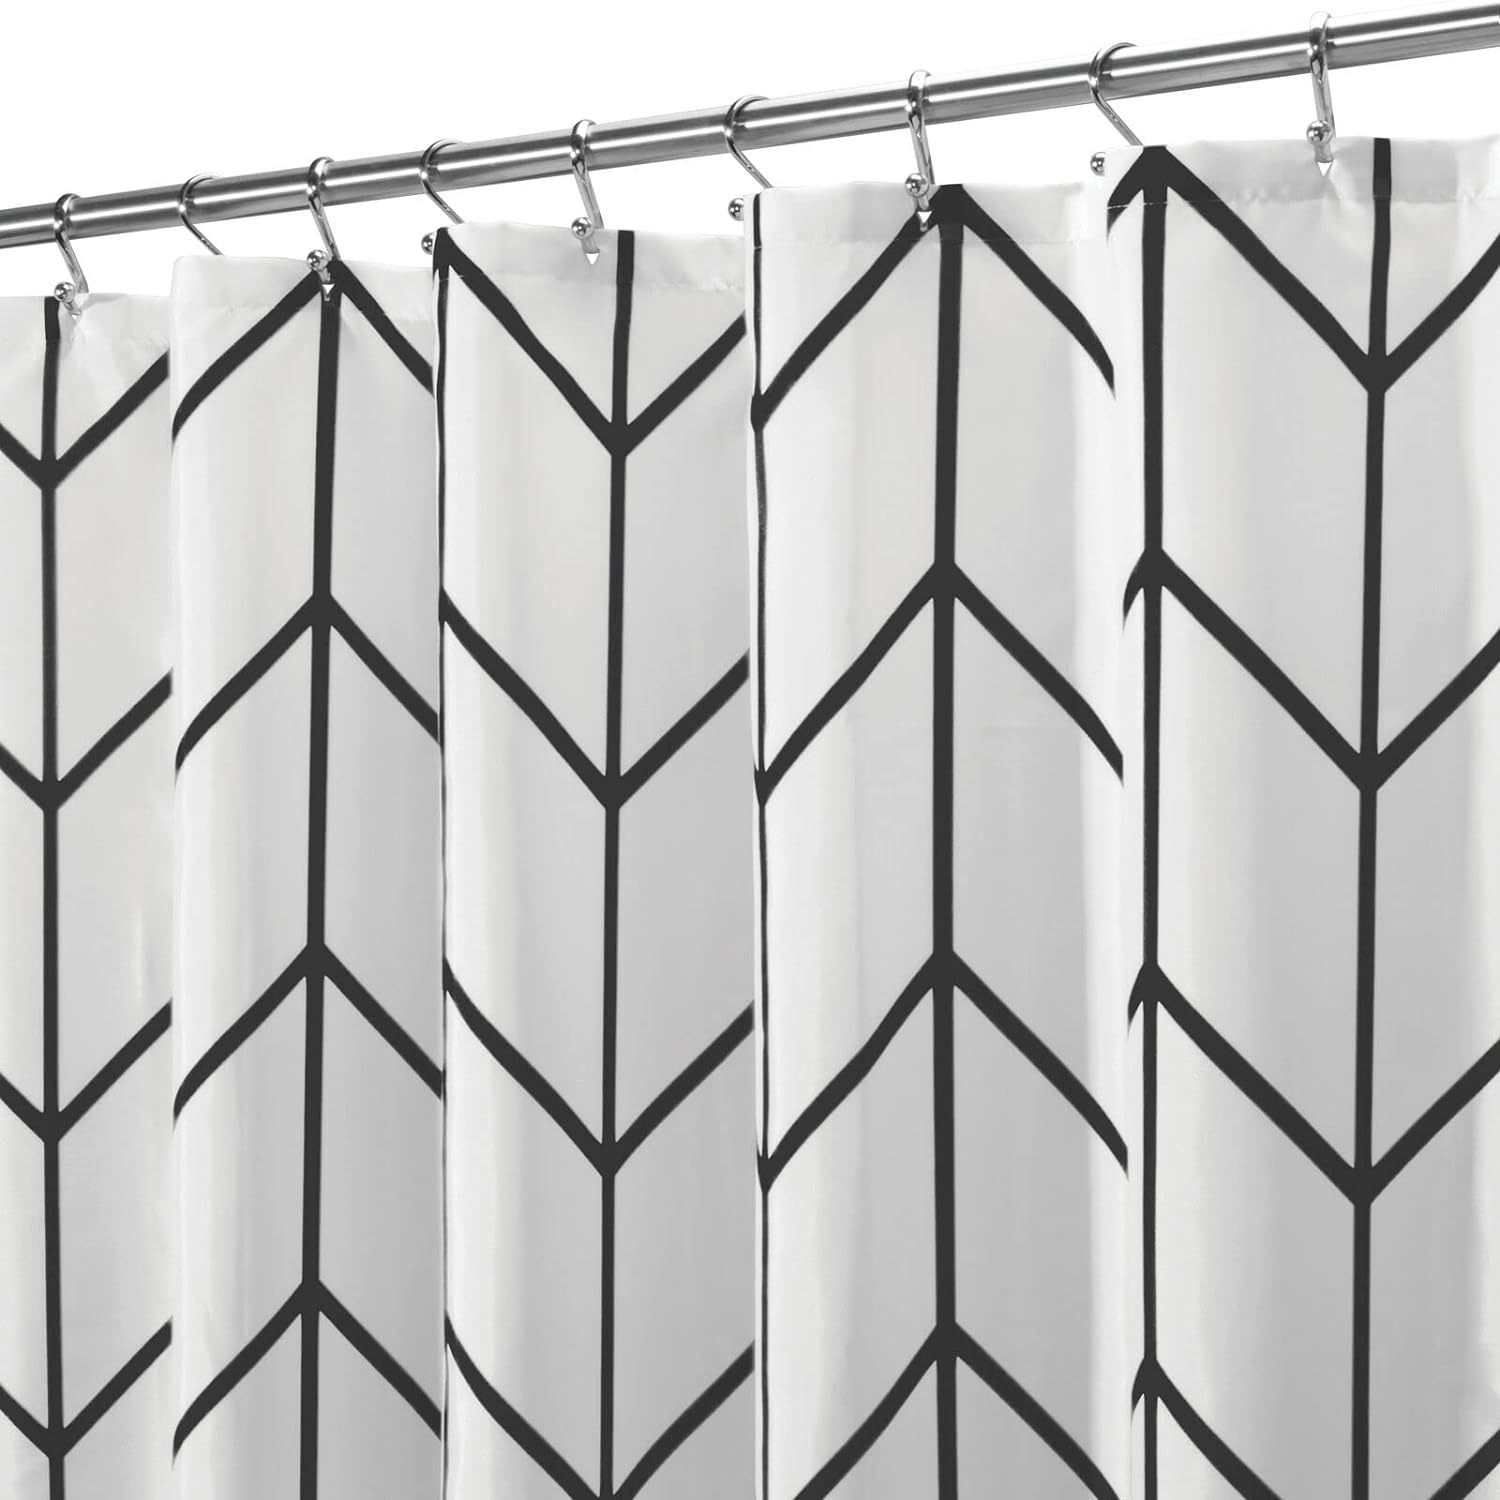 mDesign Fabric Geometric Shower Curtain - Herringbone Chevron Print with Reinfor - $33.99